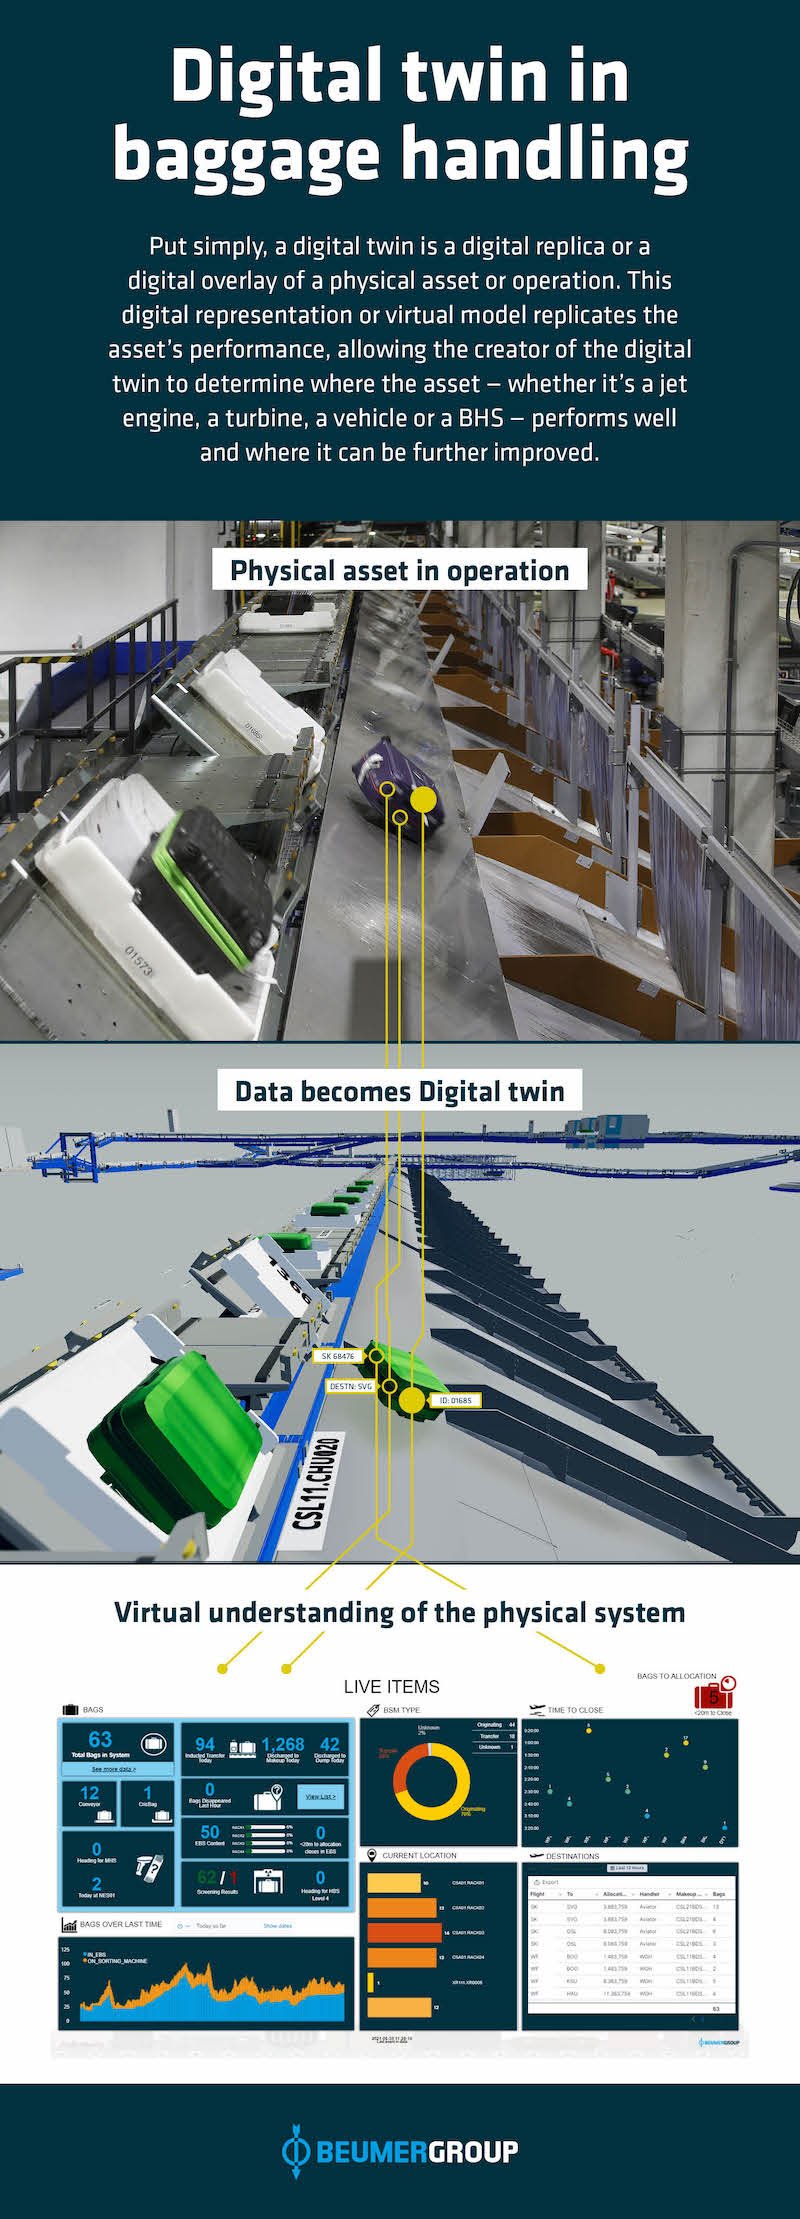 Digital twin in baggage handling